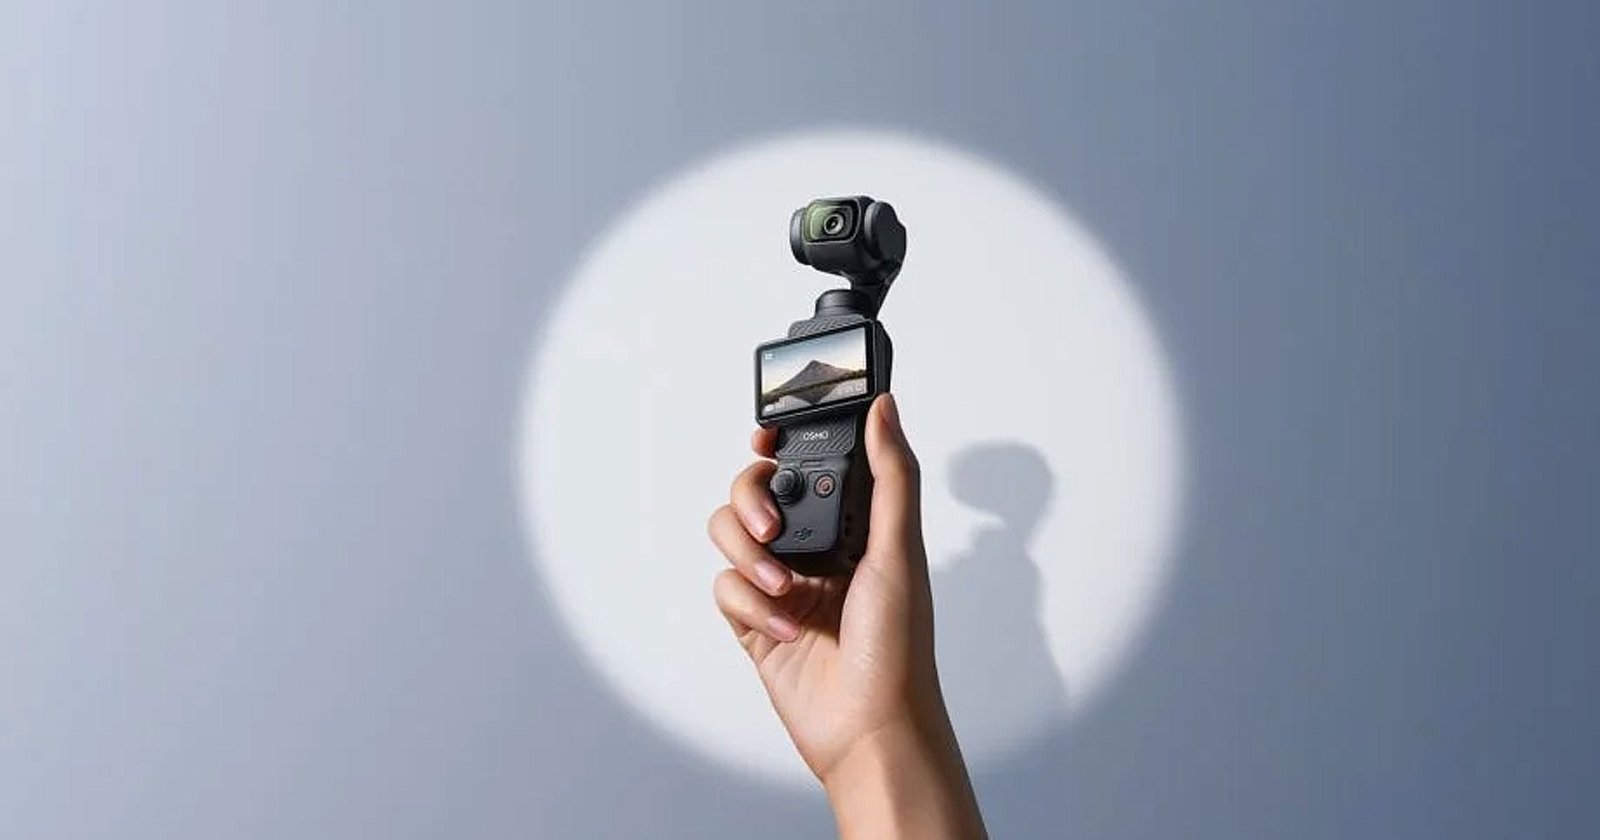 เปิดตัว DJI Osmo Pocket 3 กล้องจิ๋วสายคอนเทนต์ เซนเซอร์ใหญ่ 1 นิ้ว 4K120p พร้อมจอปรับได้ทั้งแนวนอนและแนวตั้ง!